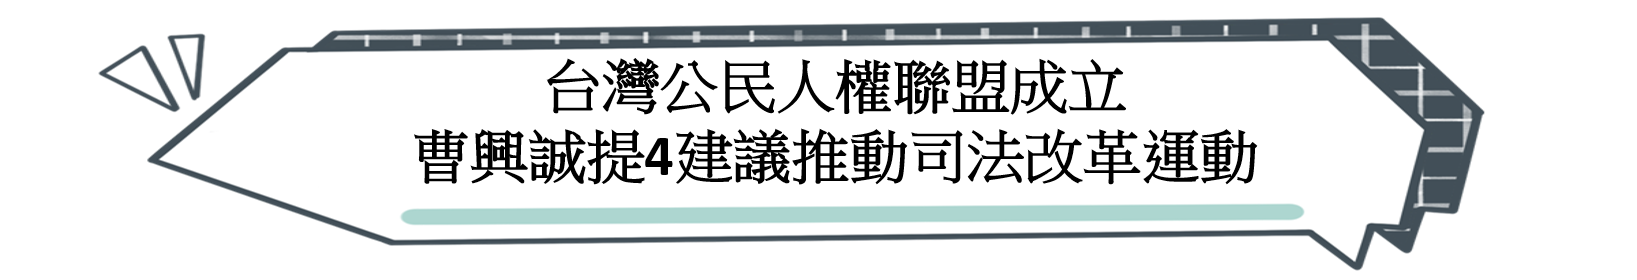 台灣公民人權聯盟成立 曹興誠提4建議推動司法改革運動